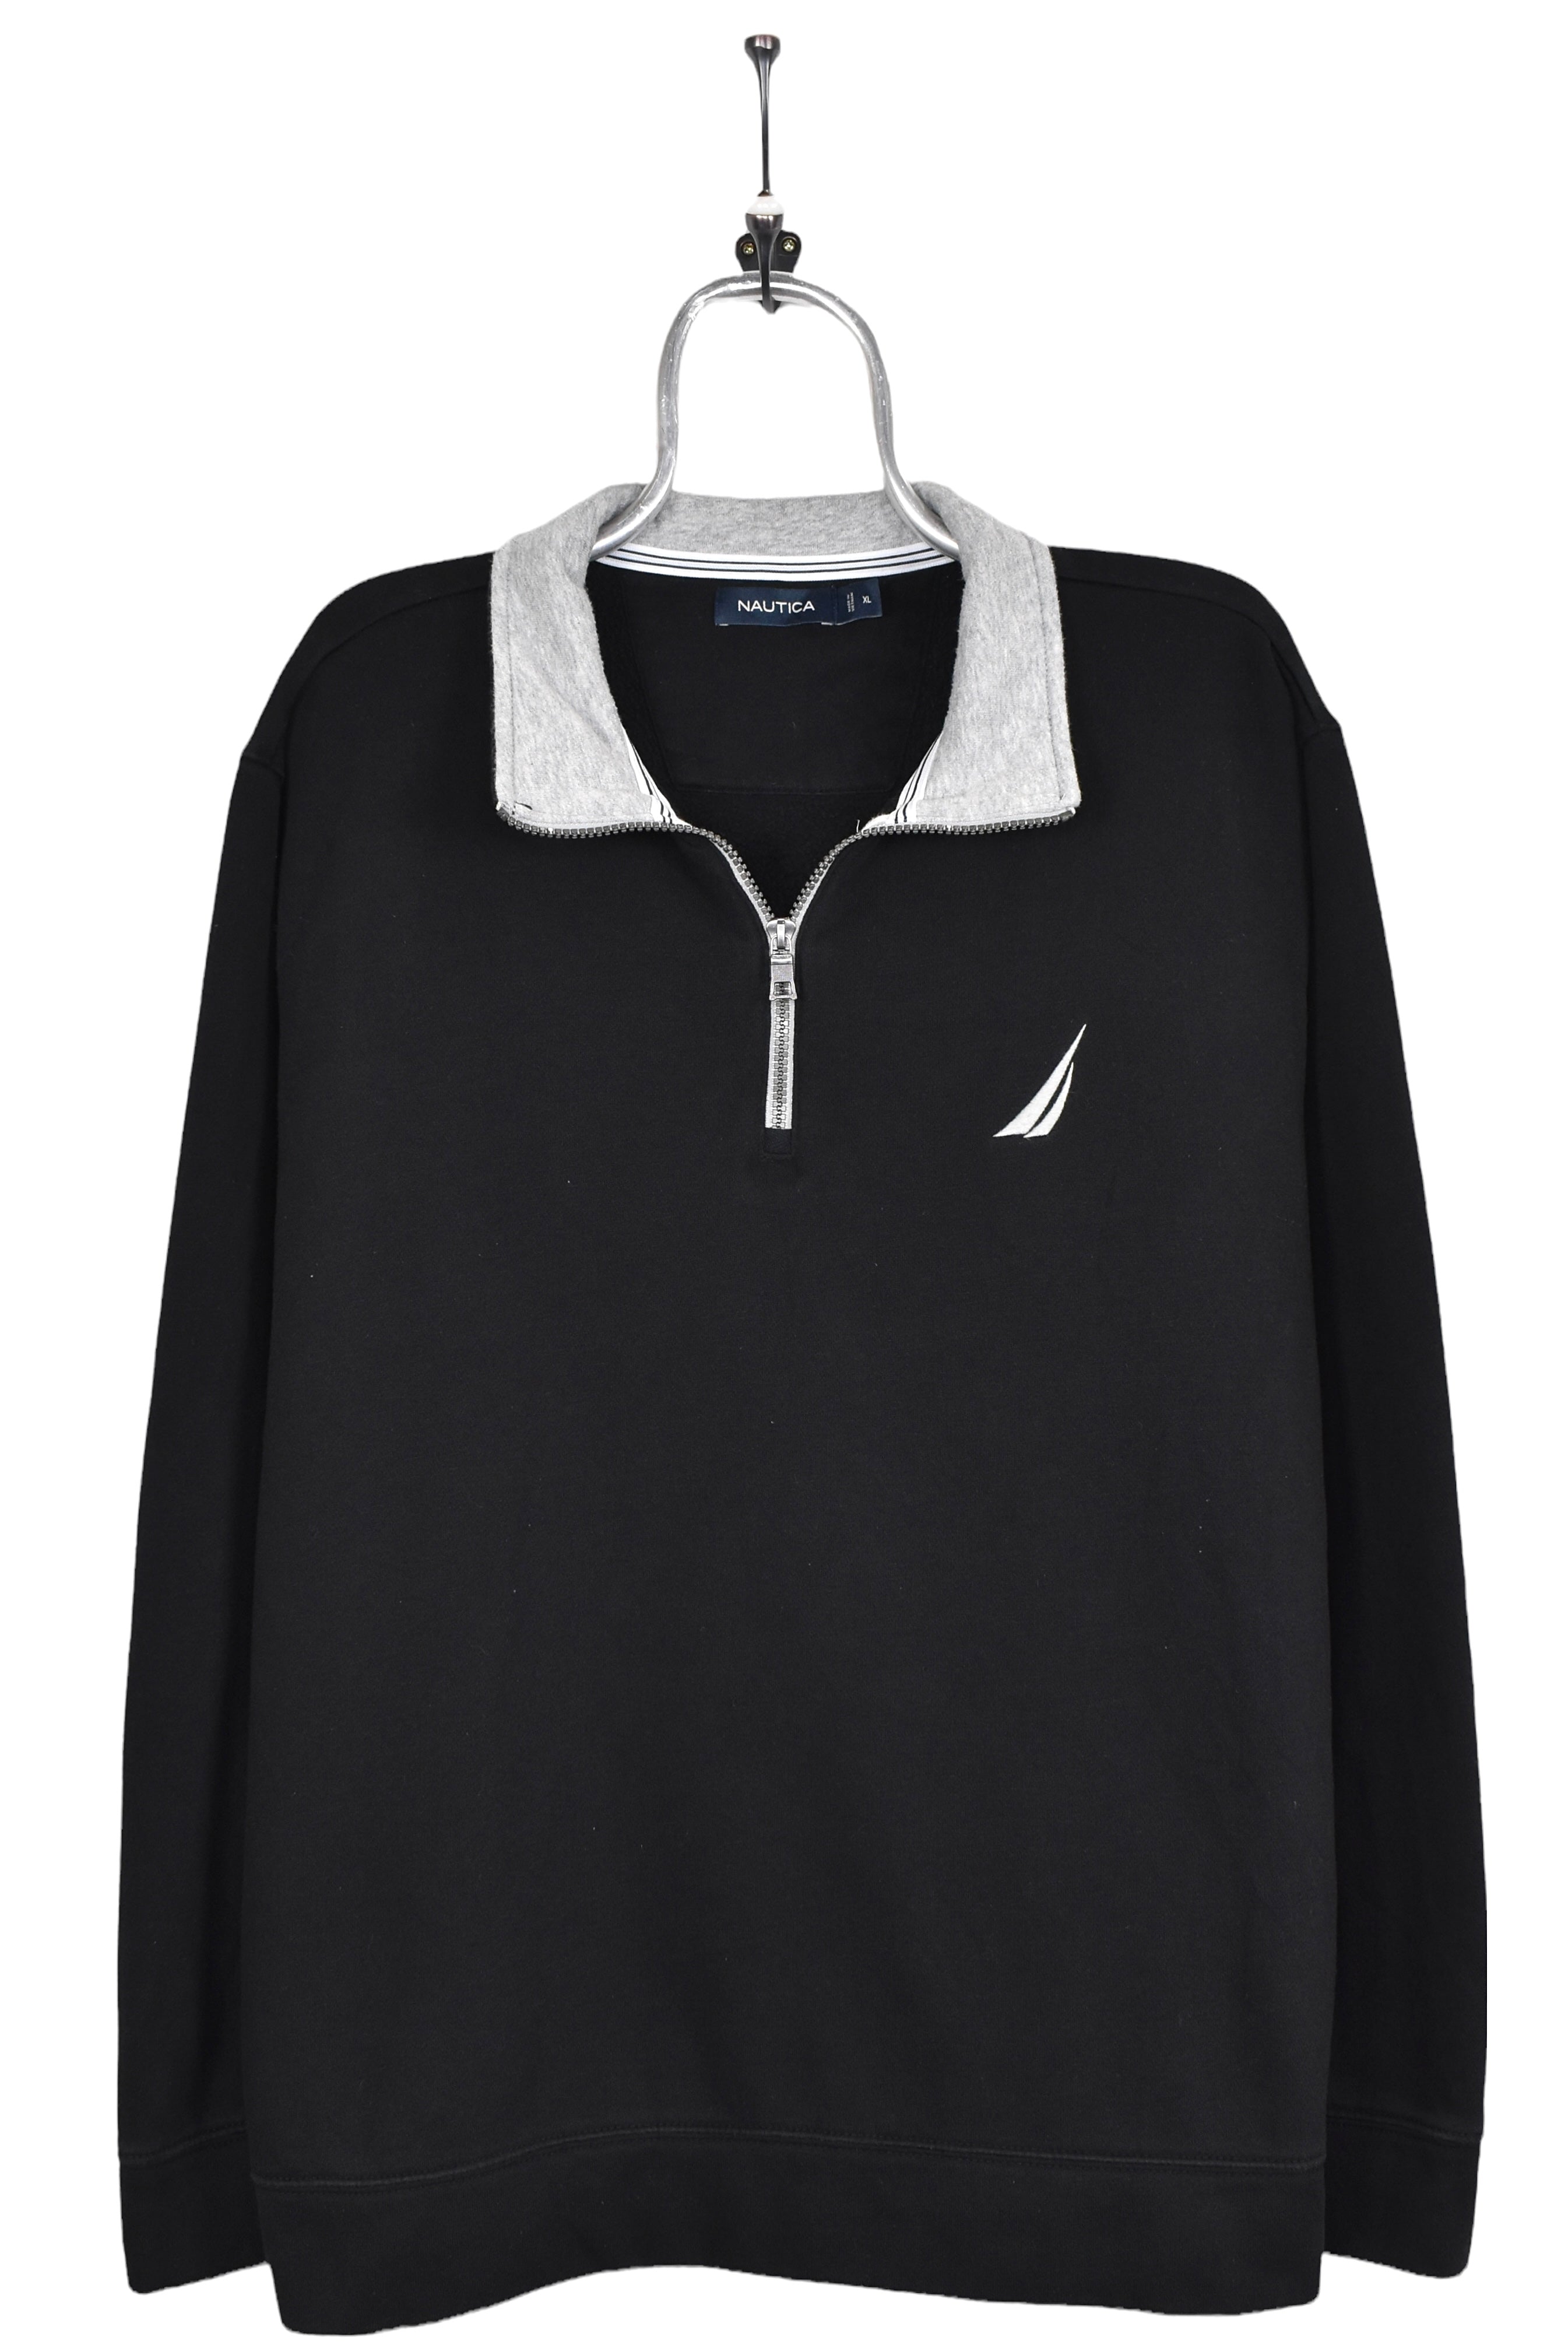 Vintage Nautica sweatshirt, black embroidered 1/4 zip jumper - AU Large NAUTICA